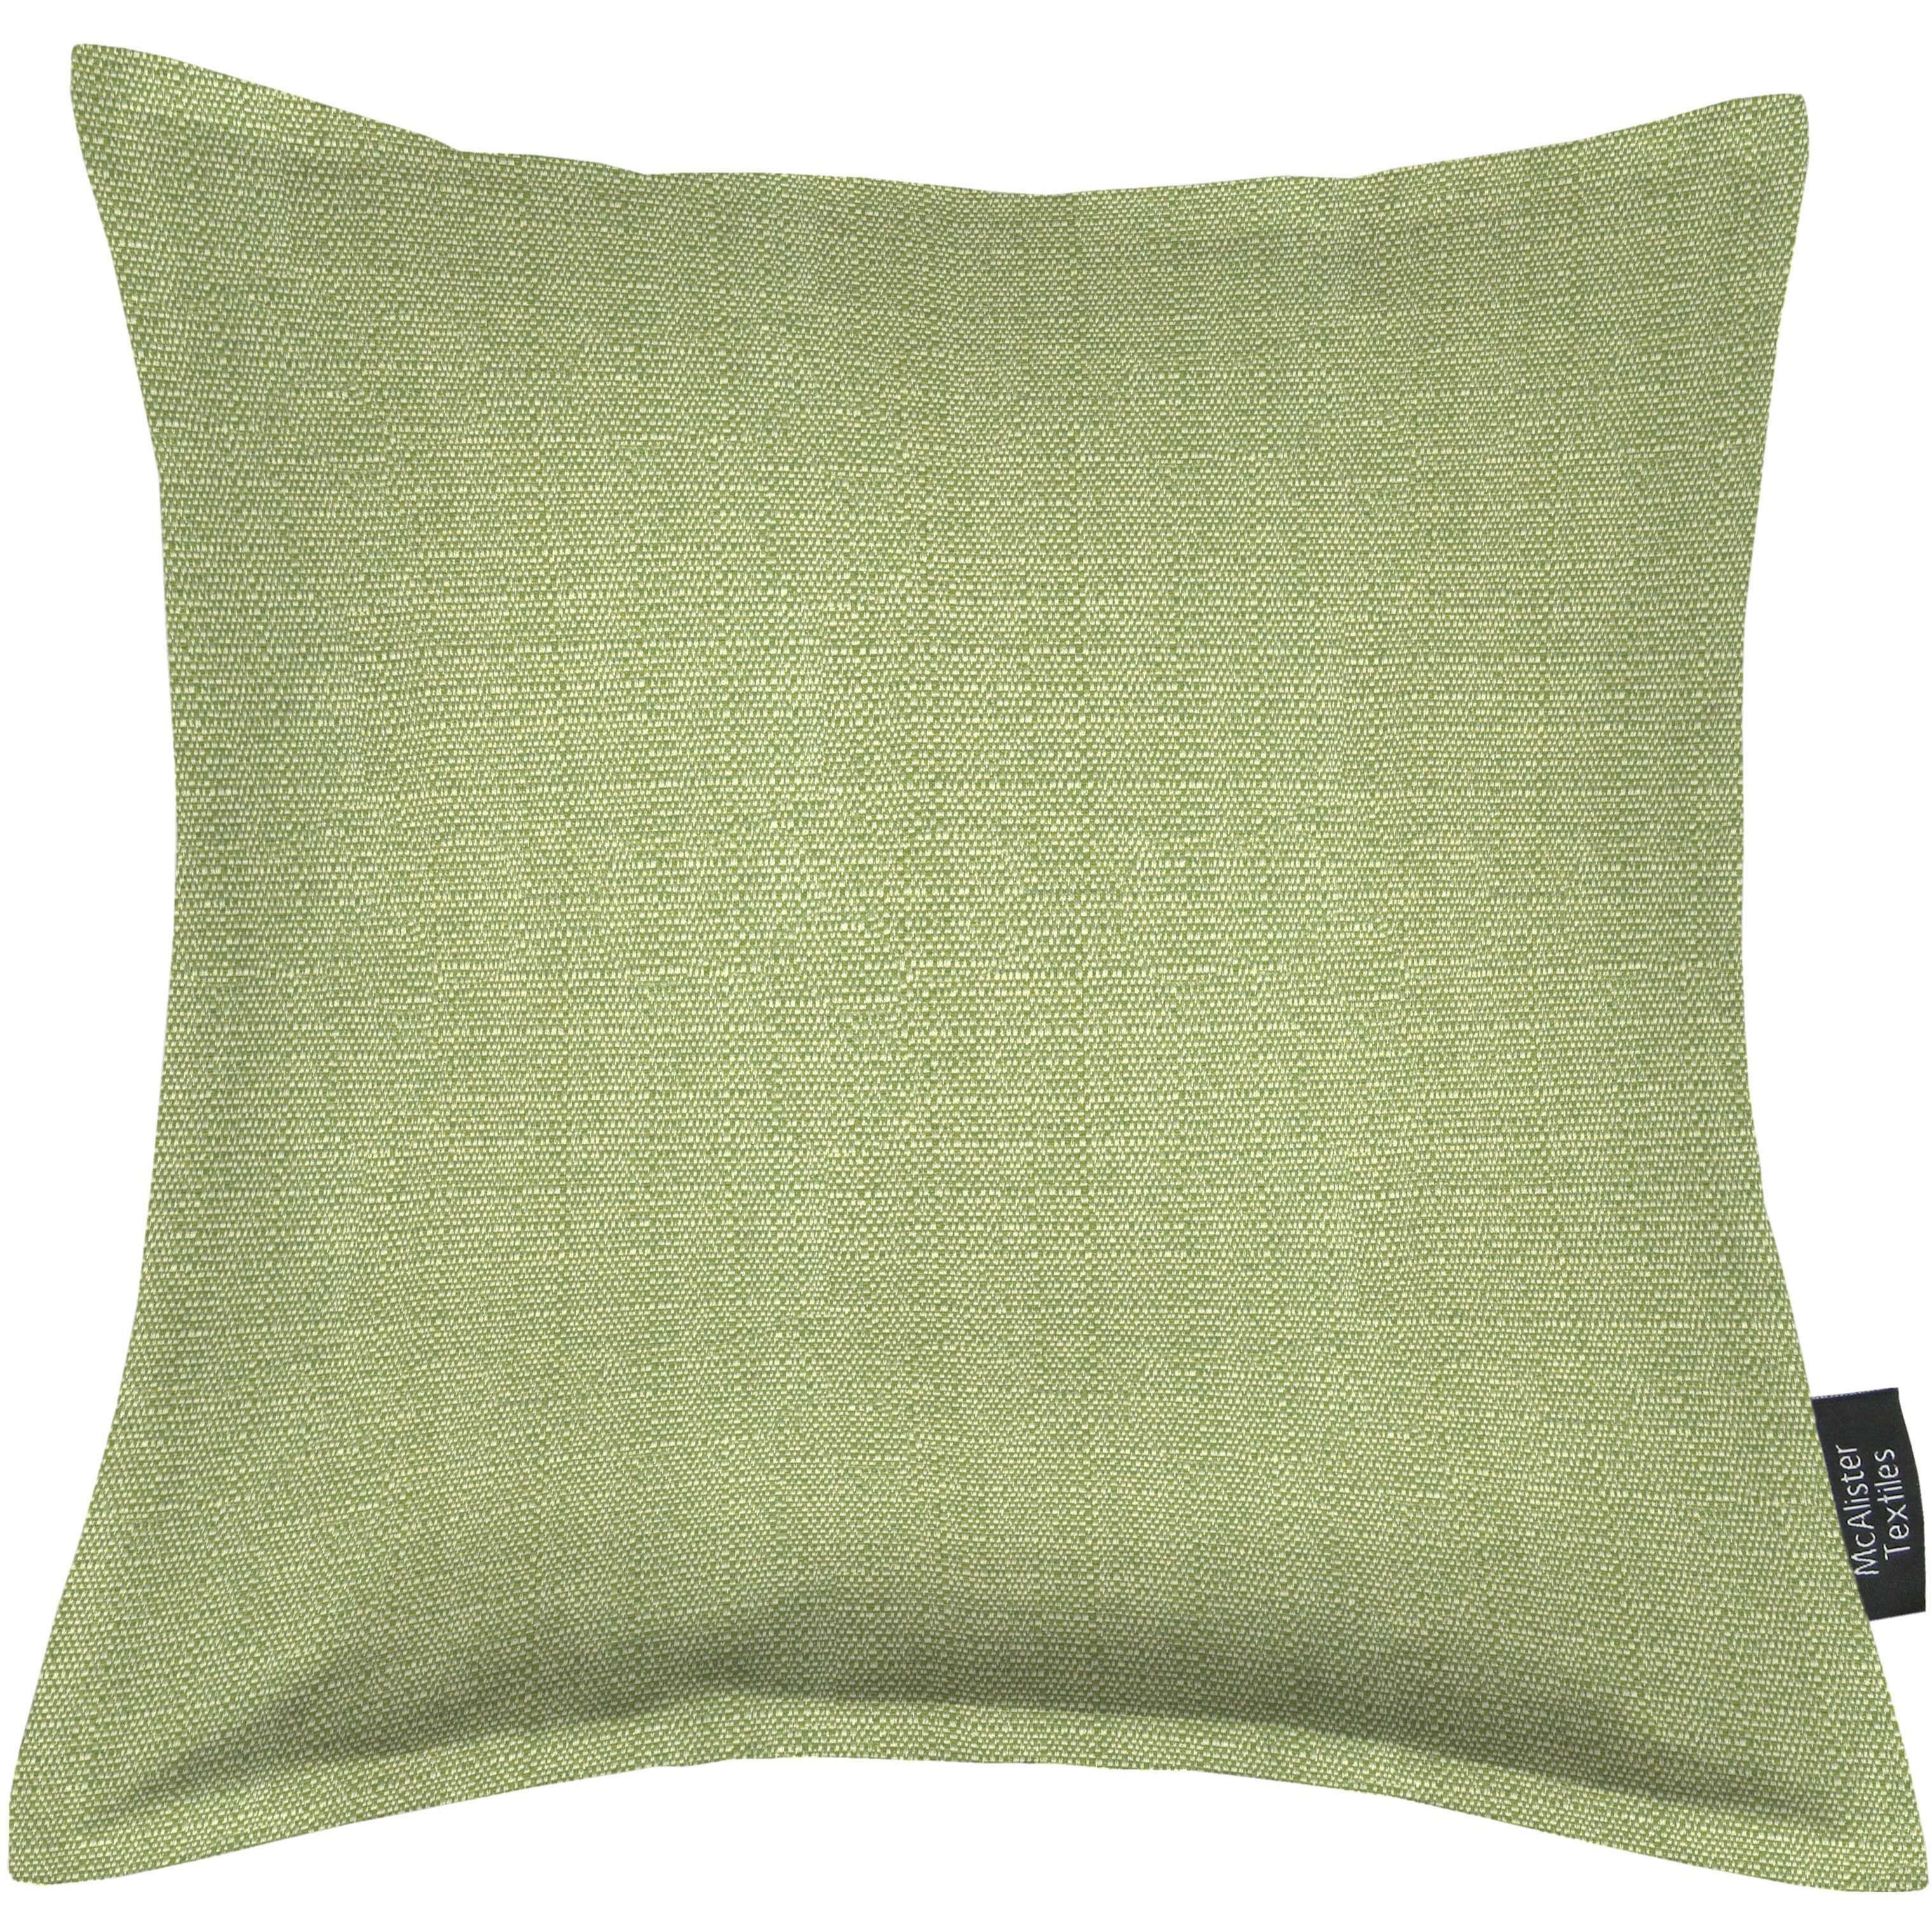 Savannah Sage Green Cushion, Cover Only / 60cm x 60cm